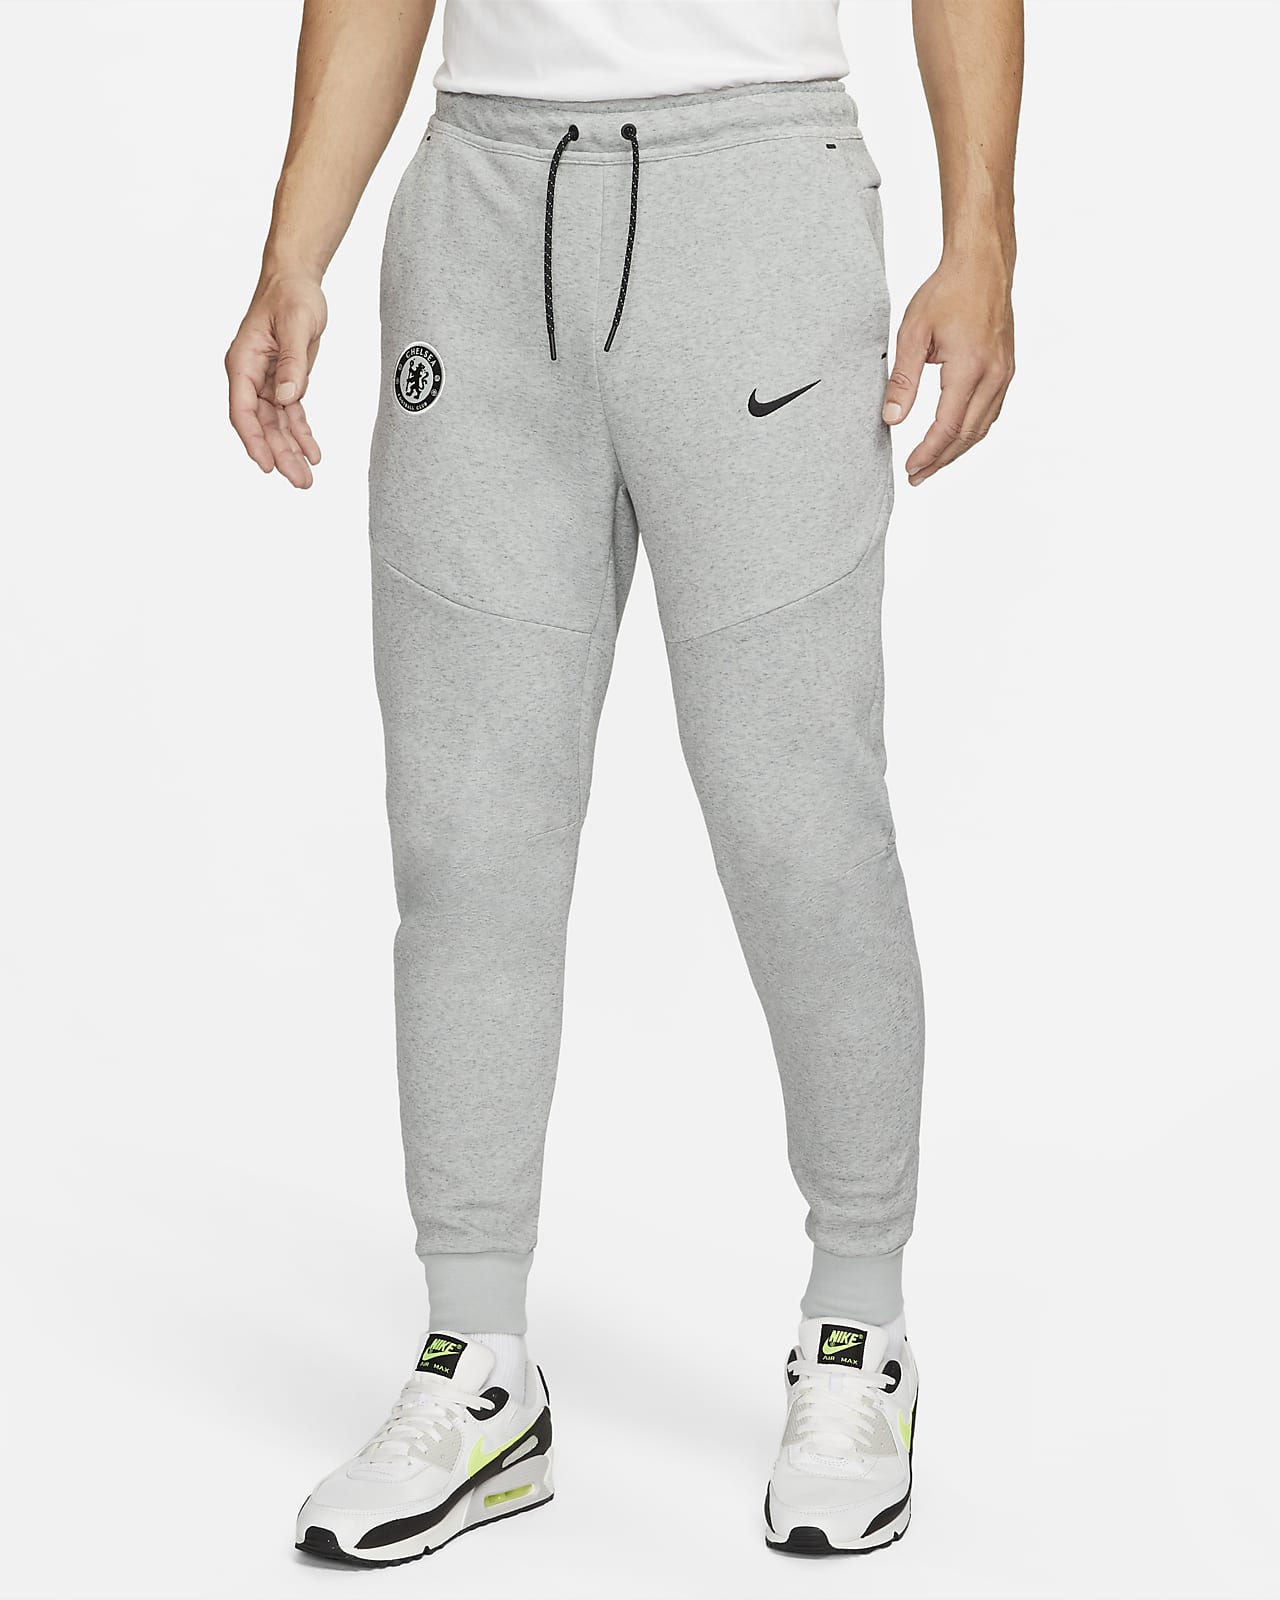 Męskie joggery piłkarskie Nike Chelsea F.C. Tech Fleece (wersja trzecia)